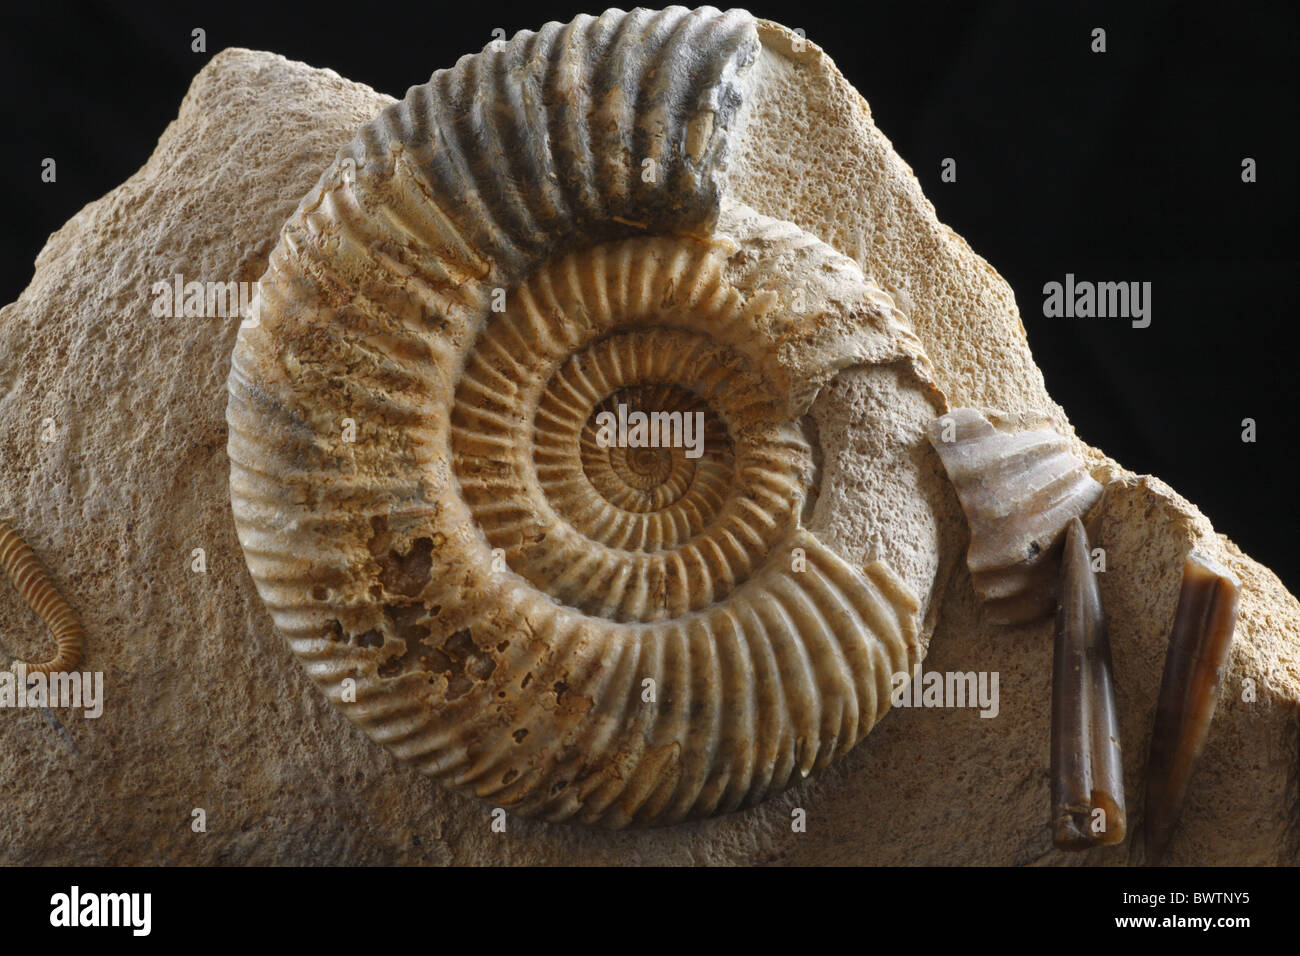 Fossil fossile Ammoniten jurassic England englische Parkinsonia Molluske Shell Versteinerung Wirbellosen Europa Europäische rock Stockfoto